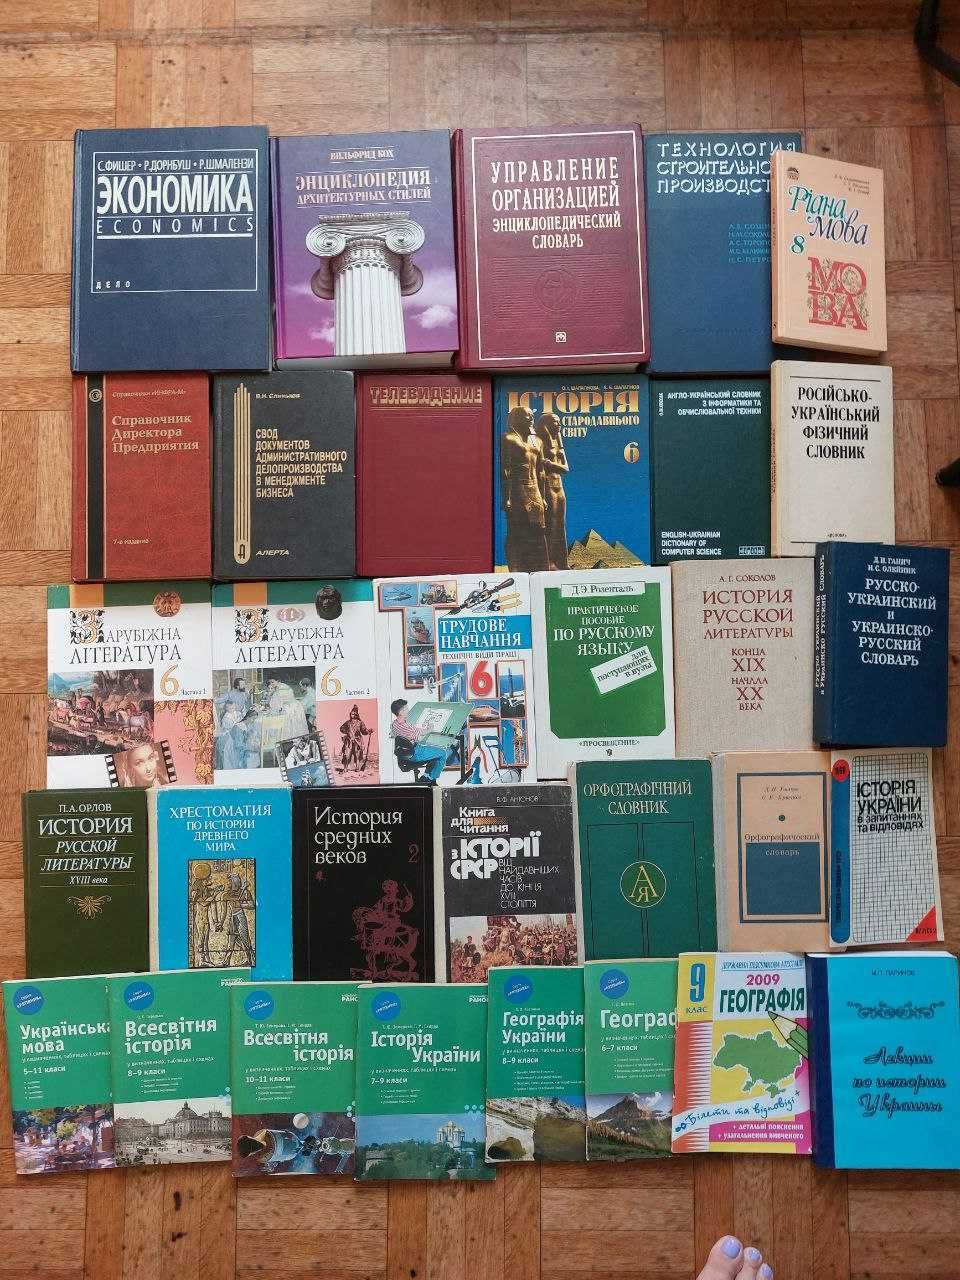 Учебники по математ, химии, физике, экономике, укр. англ. и нем. языку